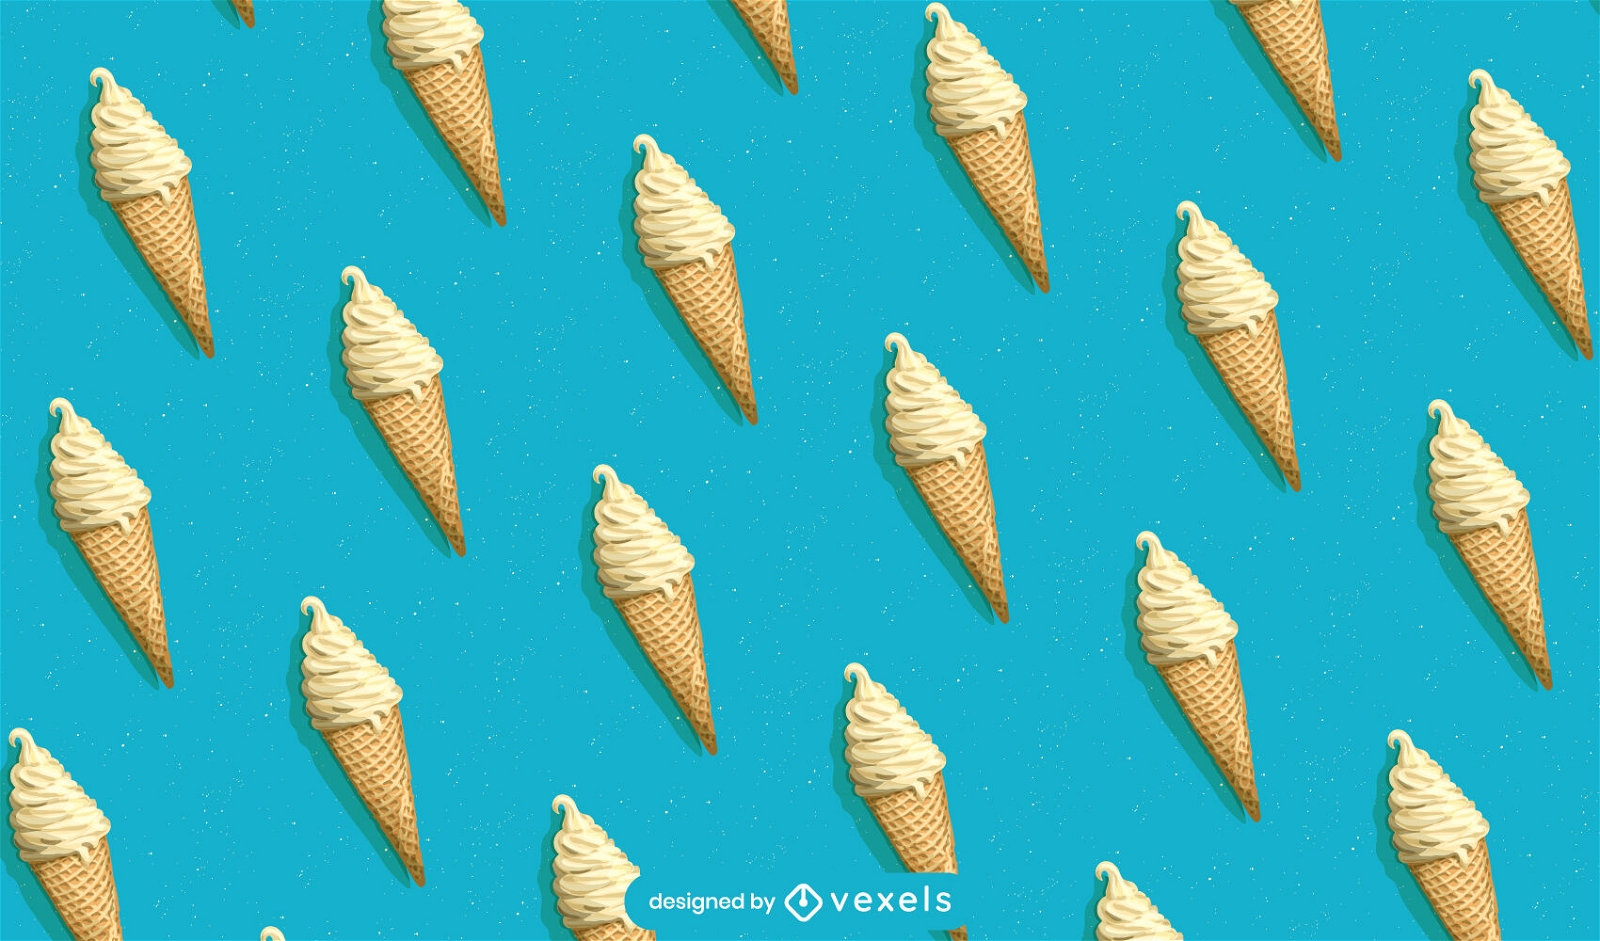 Realistic ice cream cone pattern